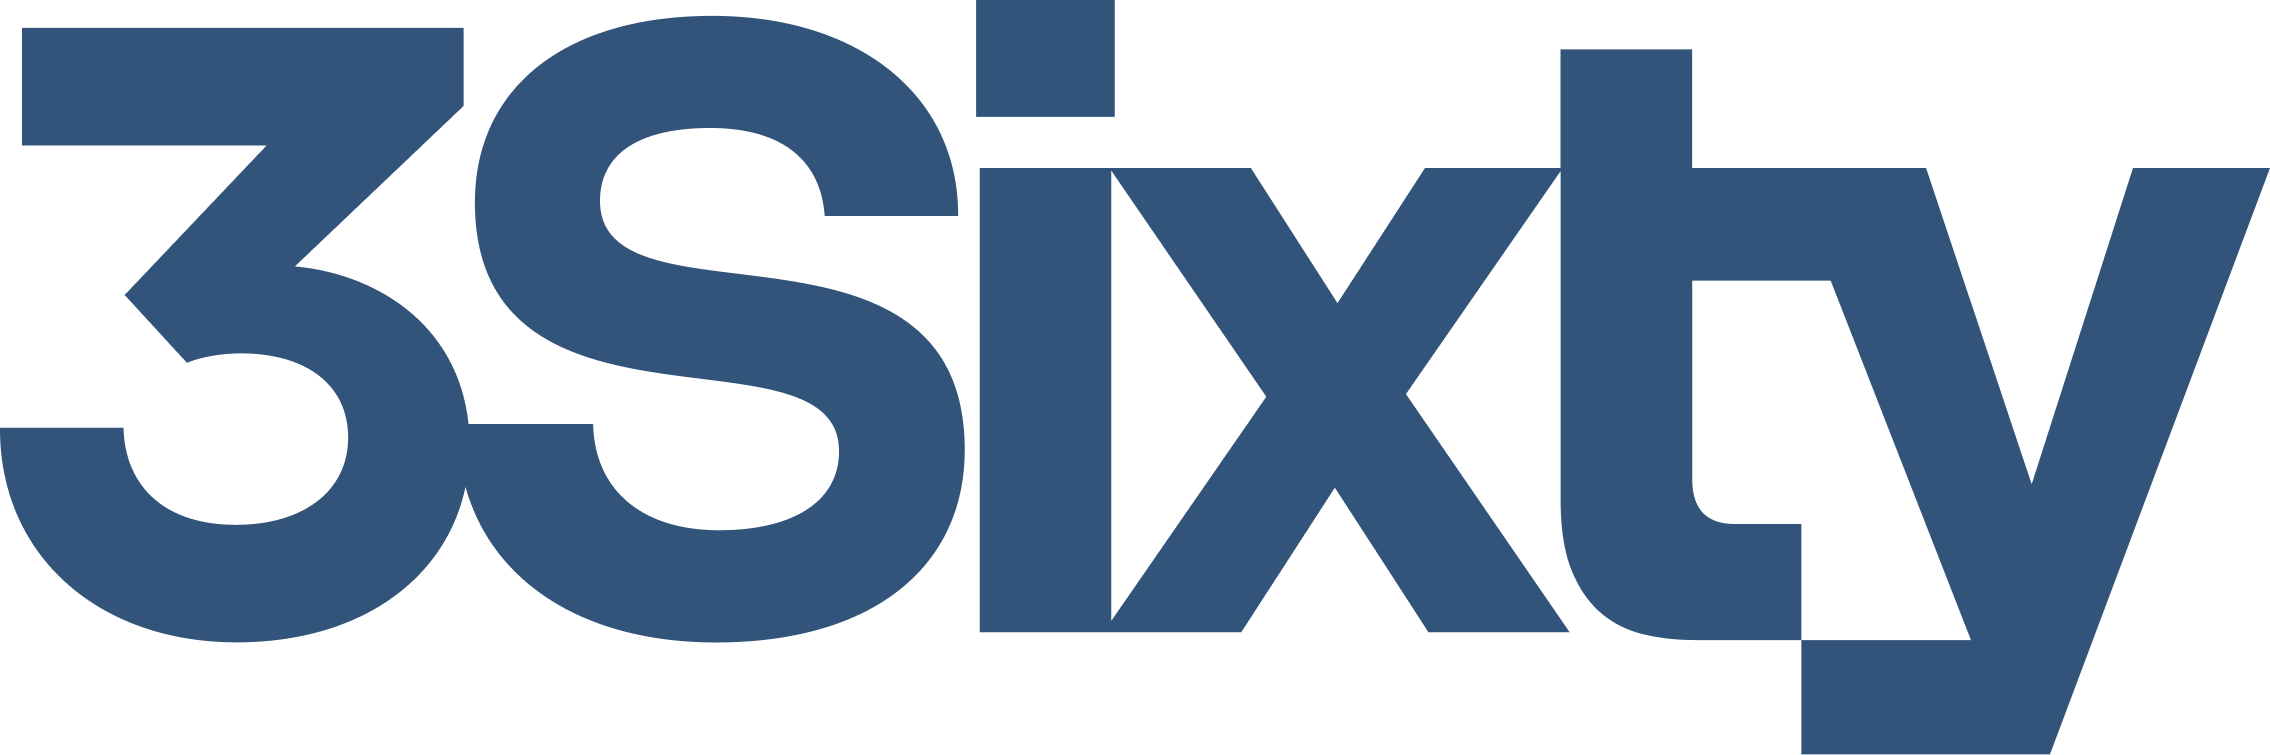 3 Sixty Logo